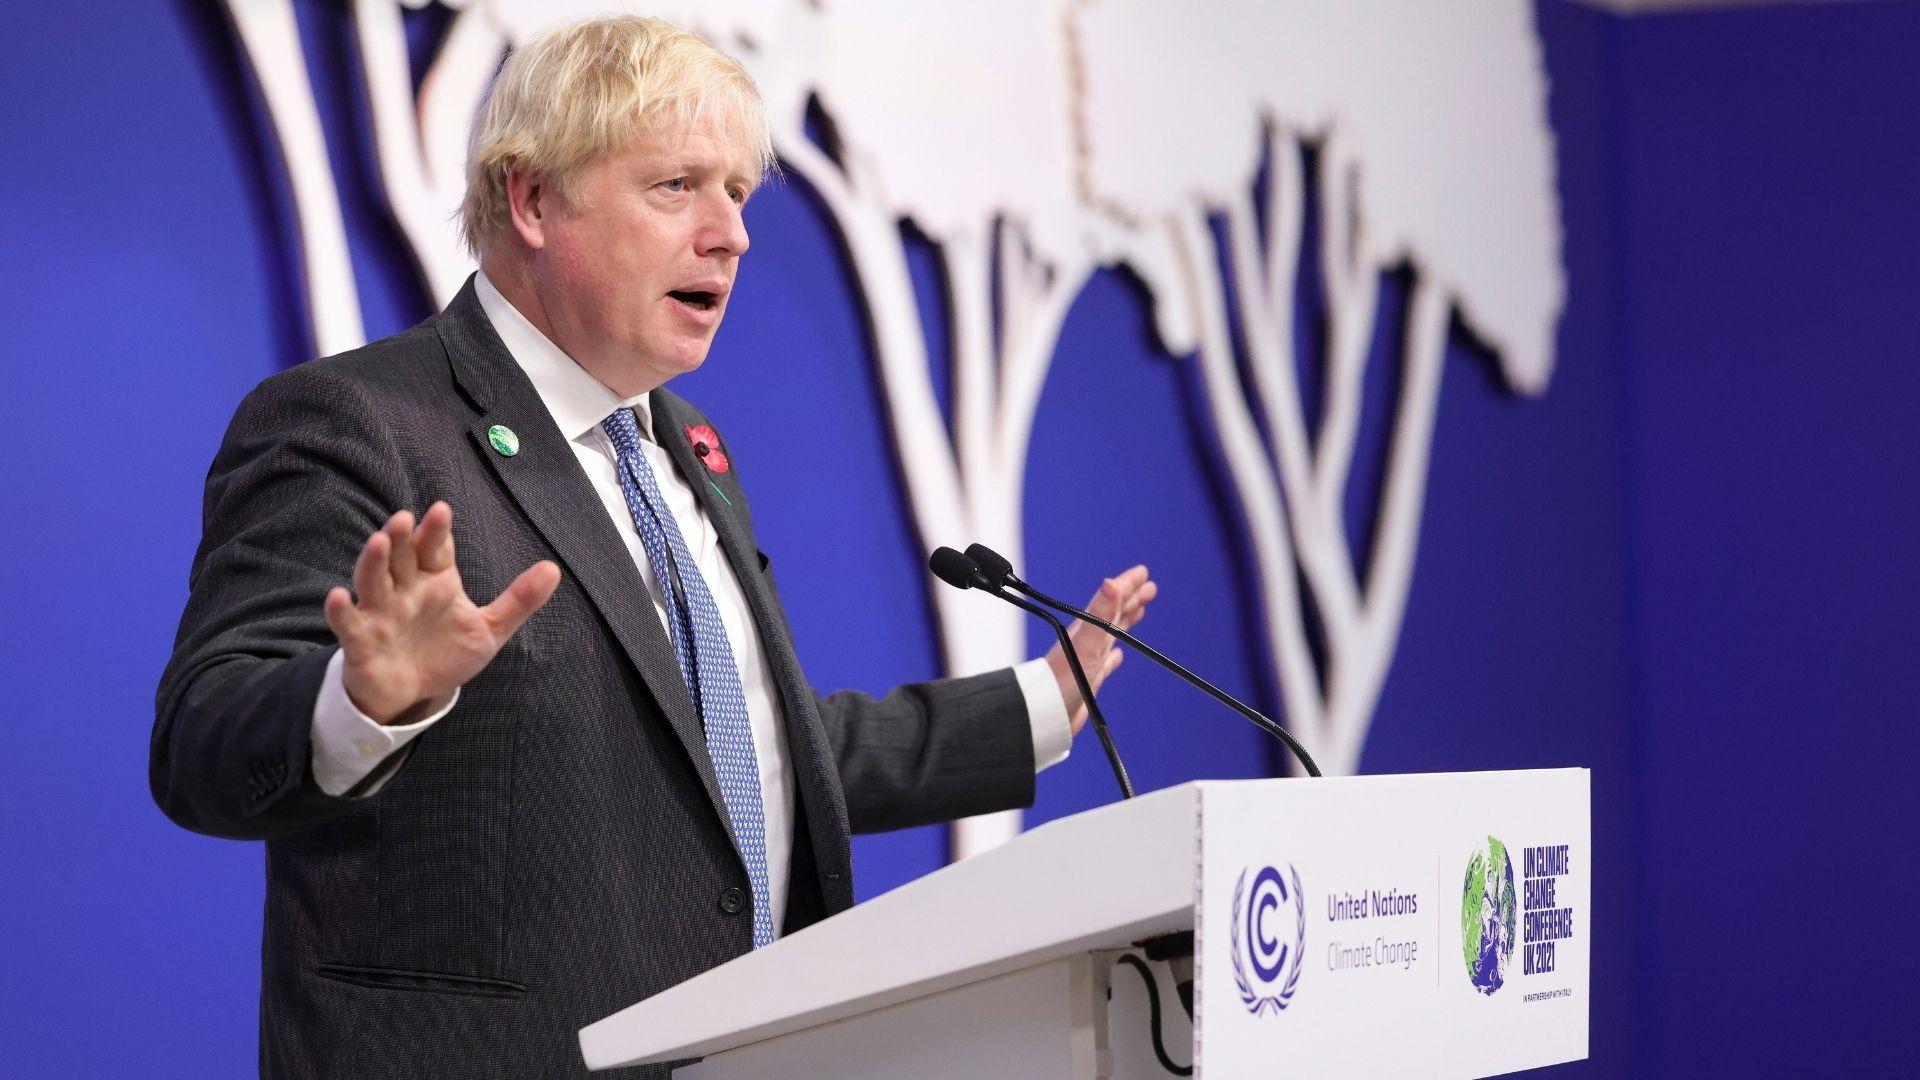 UK PM Boris Johnson speaking at COP26